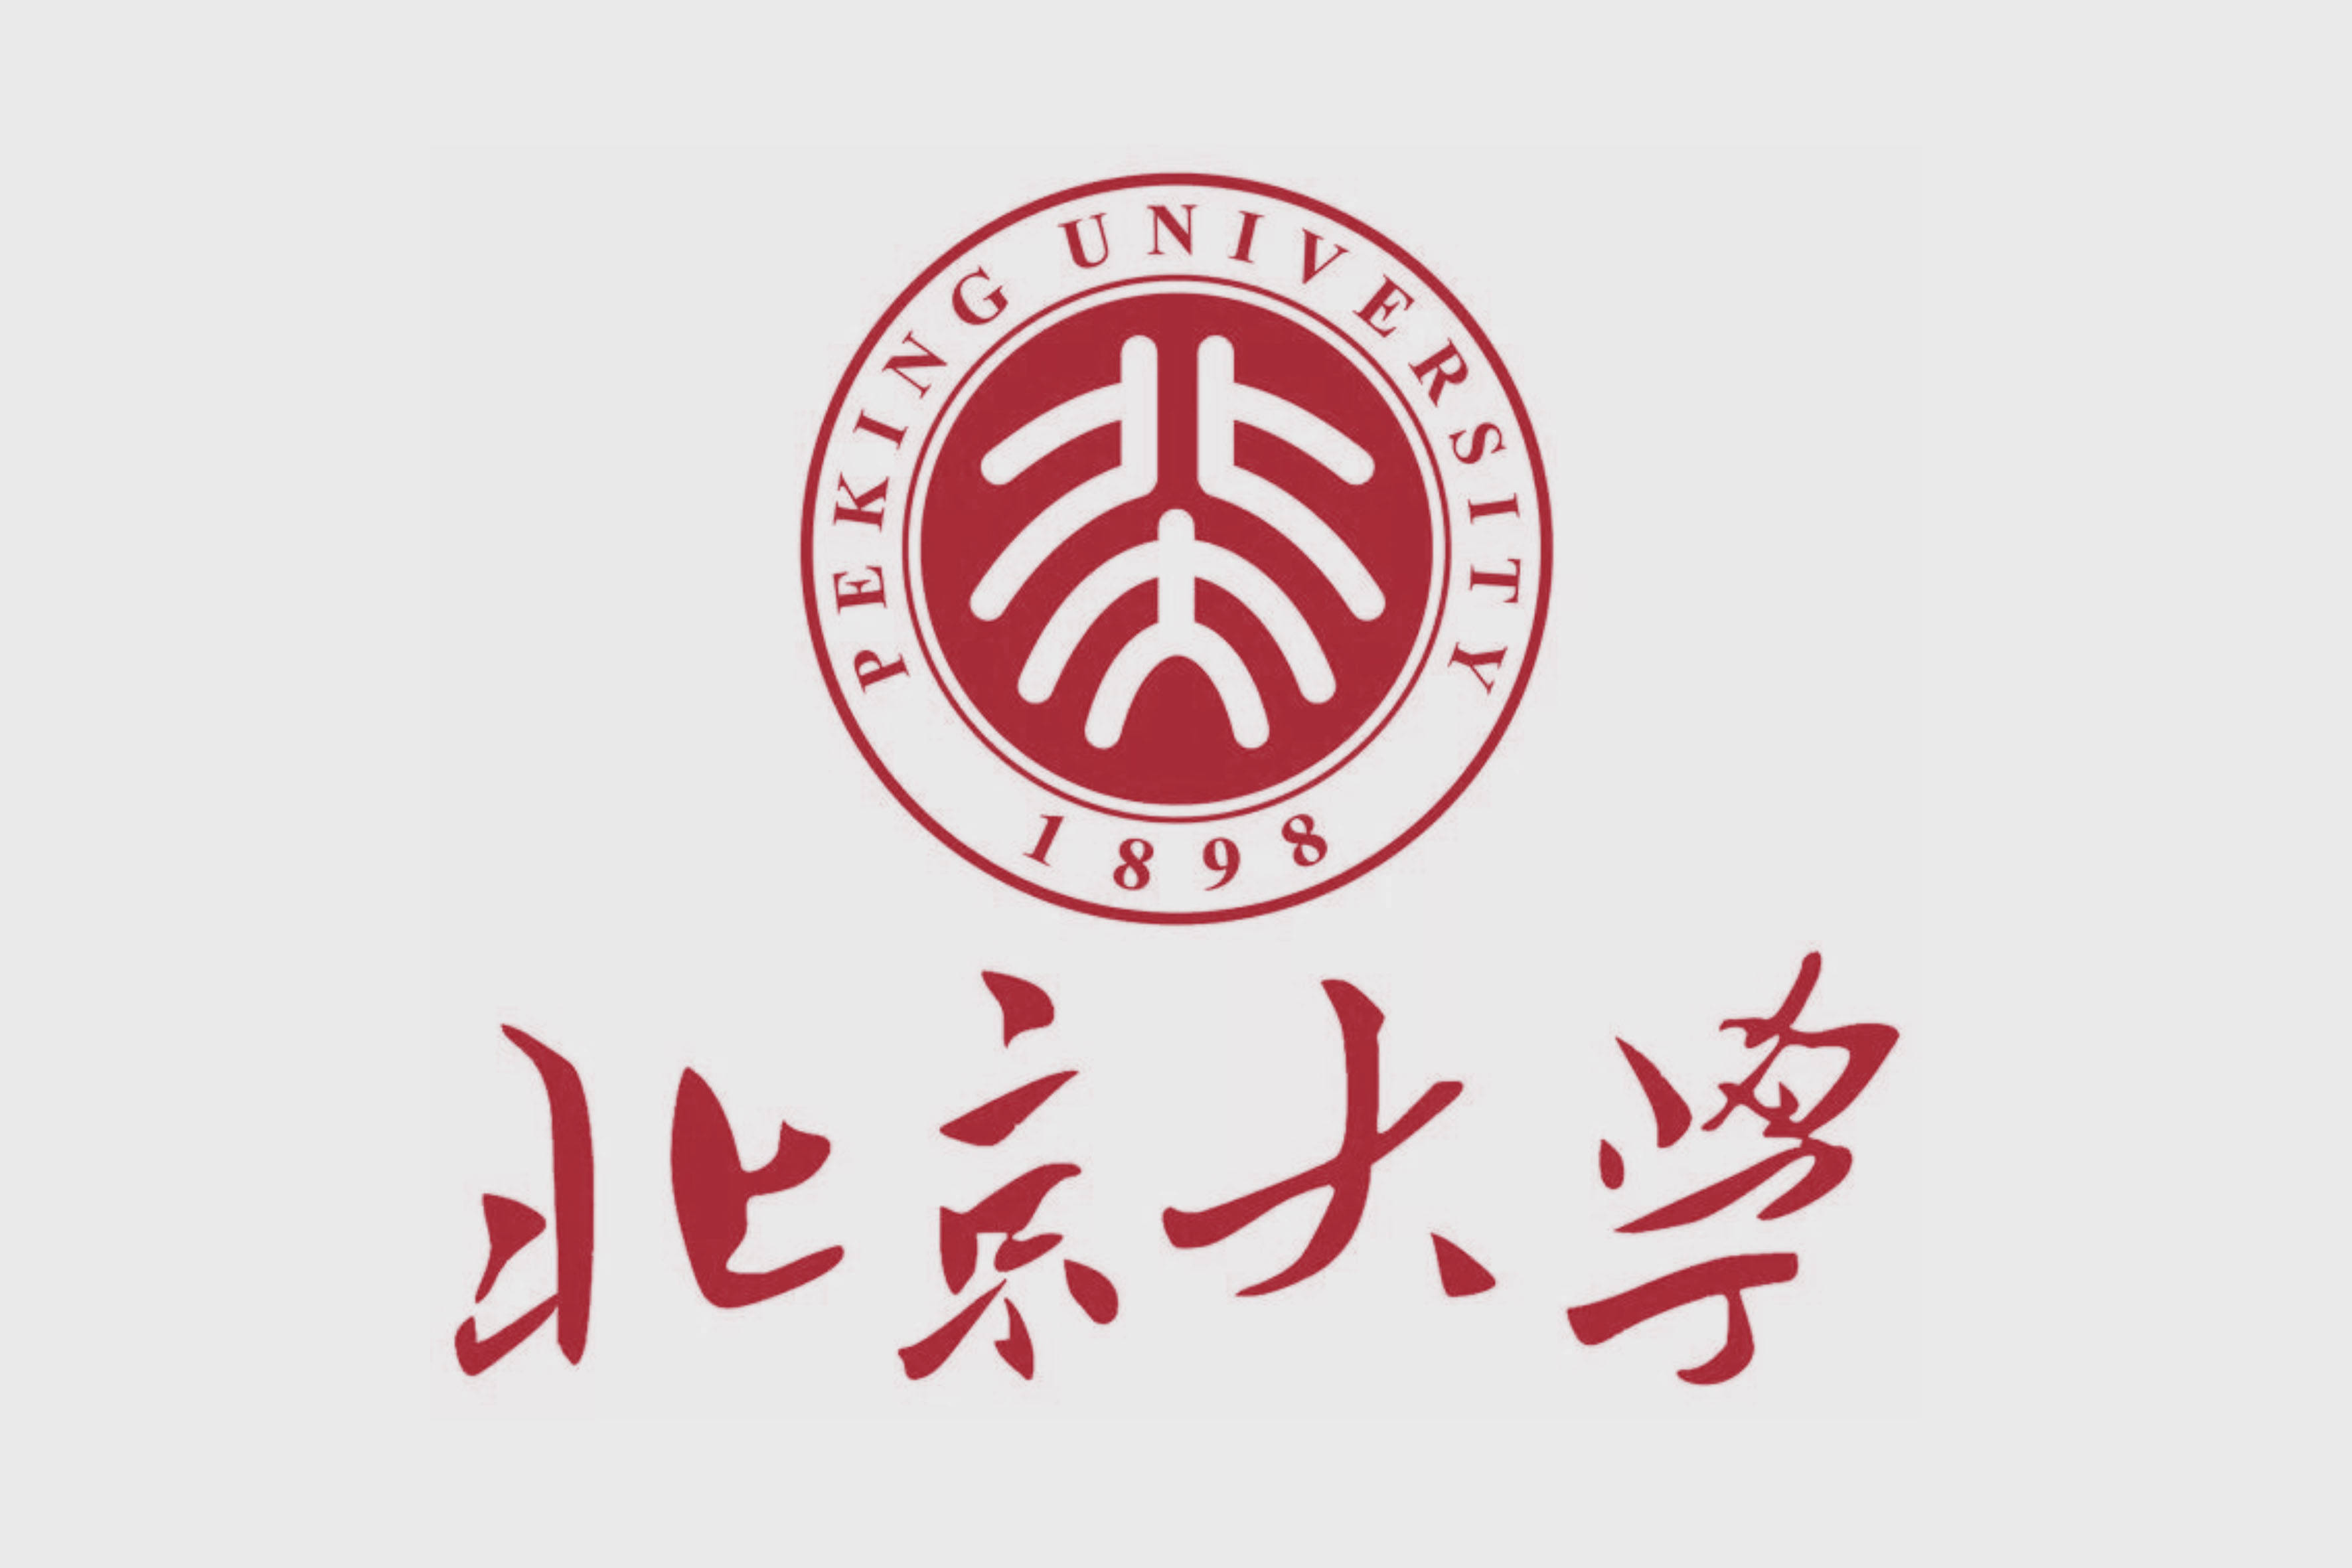 设计作品也是你我所过见的,比如他所设计的北京大学校徽logo至今仍被